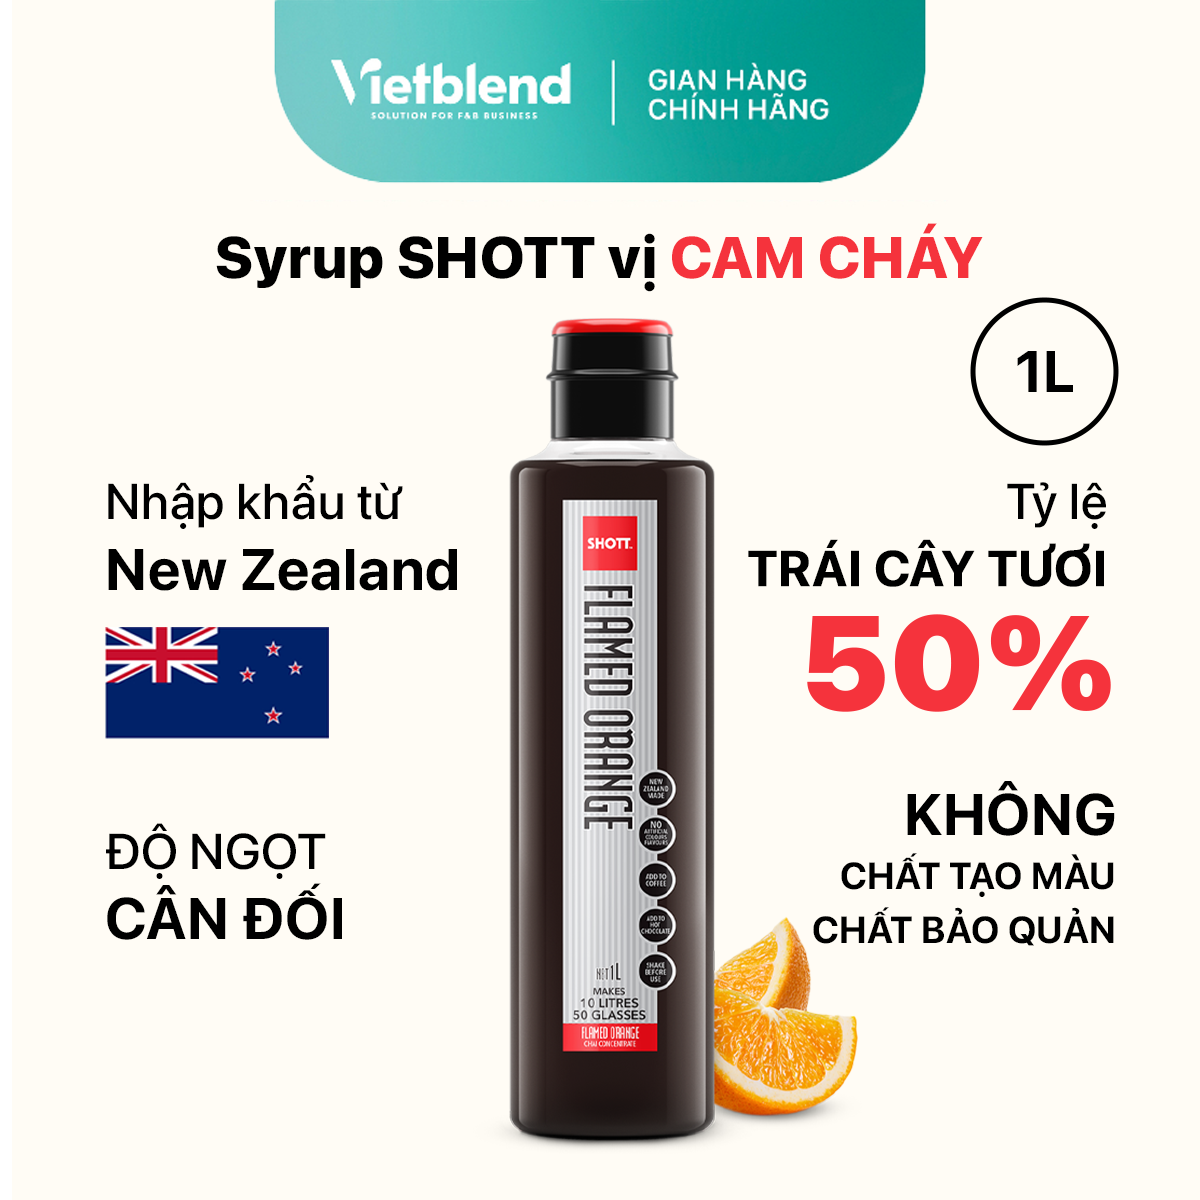 SHOTT Syrup - Flamed Orange Flavor - 1L Bottle